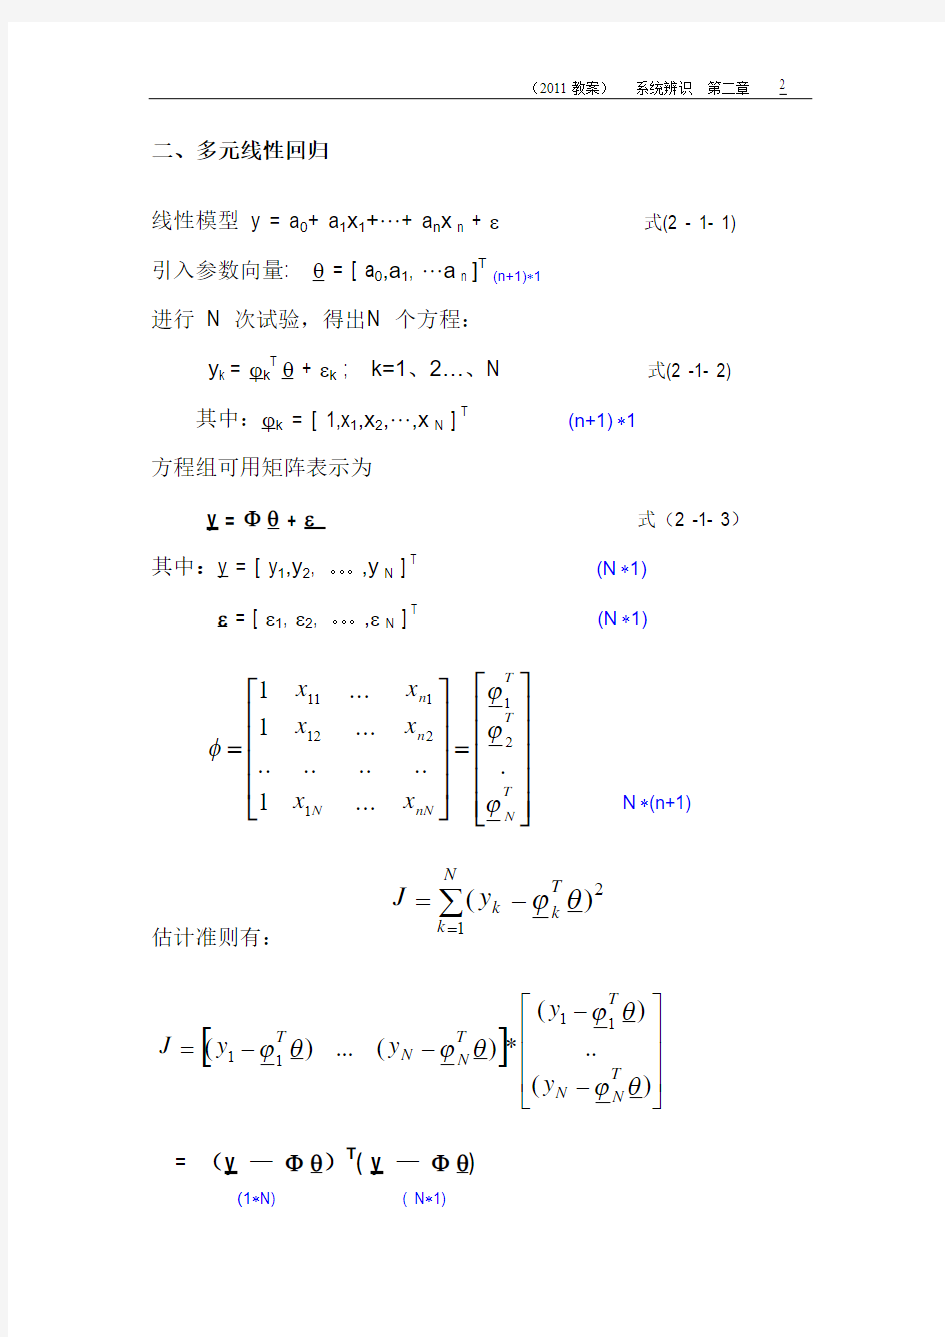 2动态过程数学模型参数估计的最小二乘方法